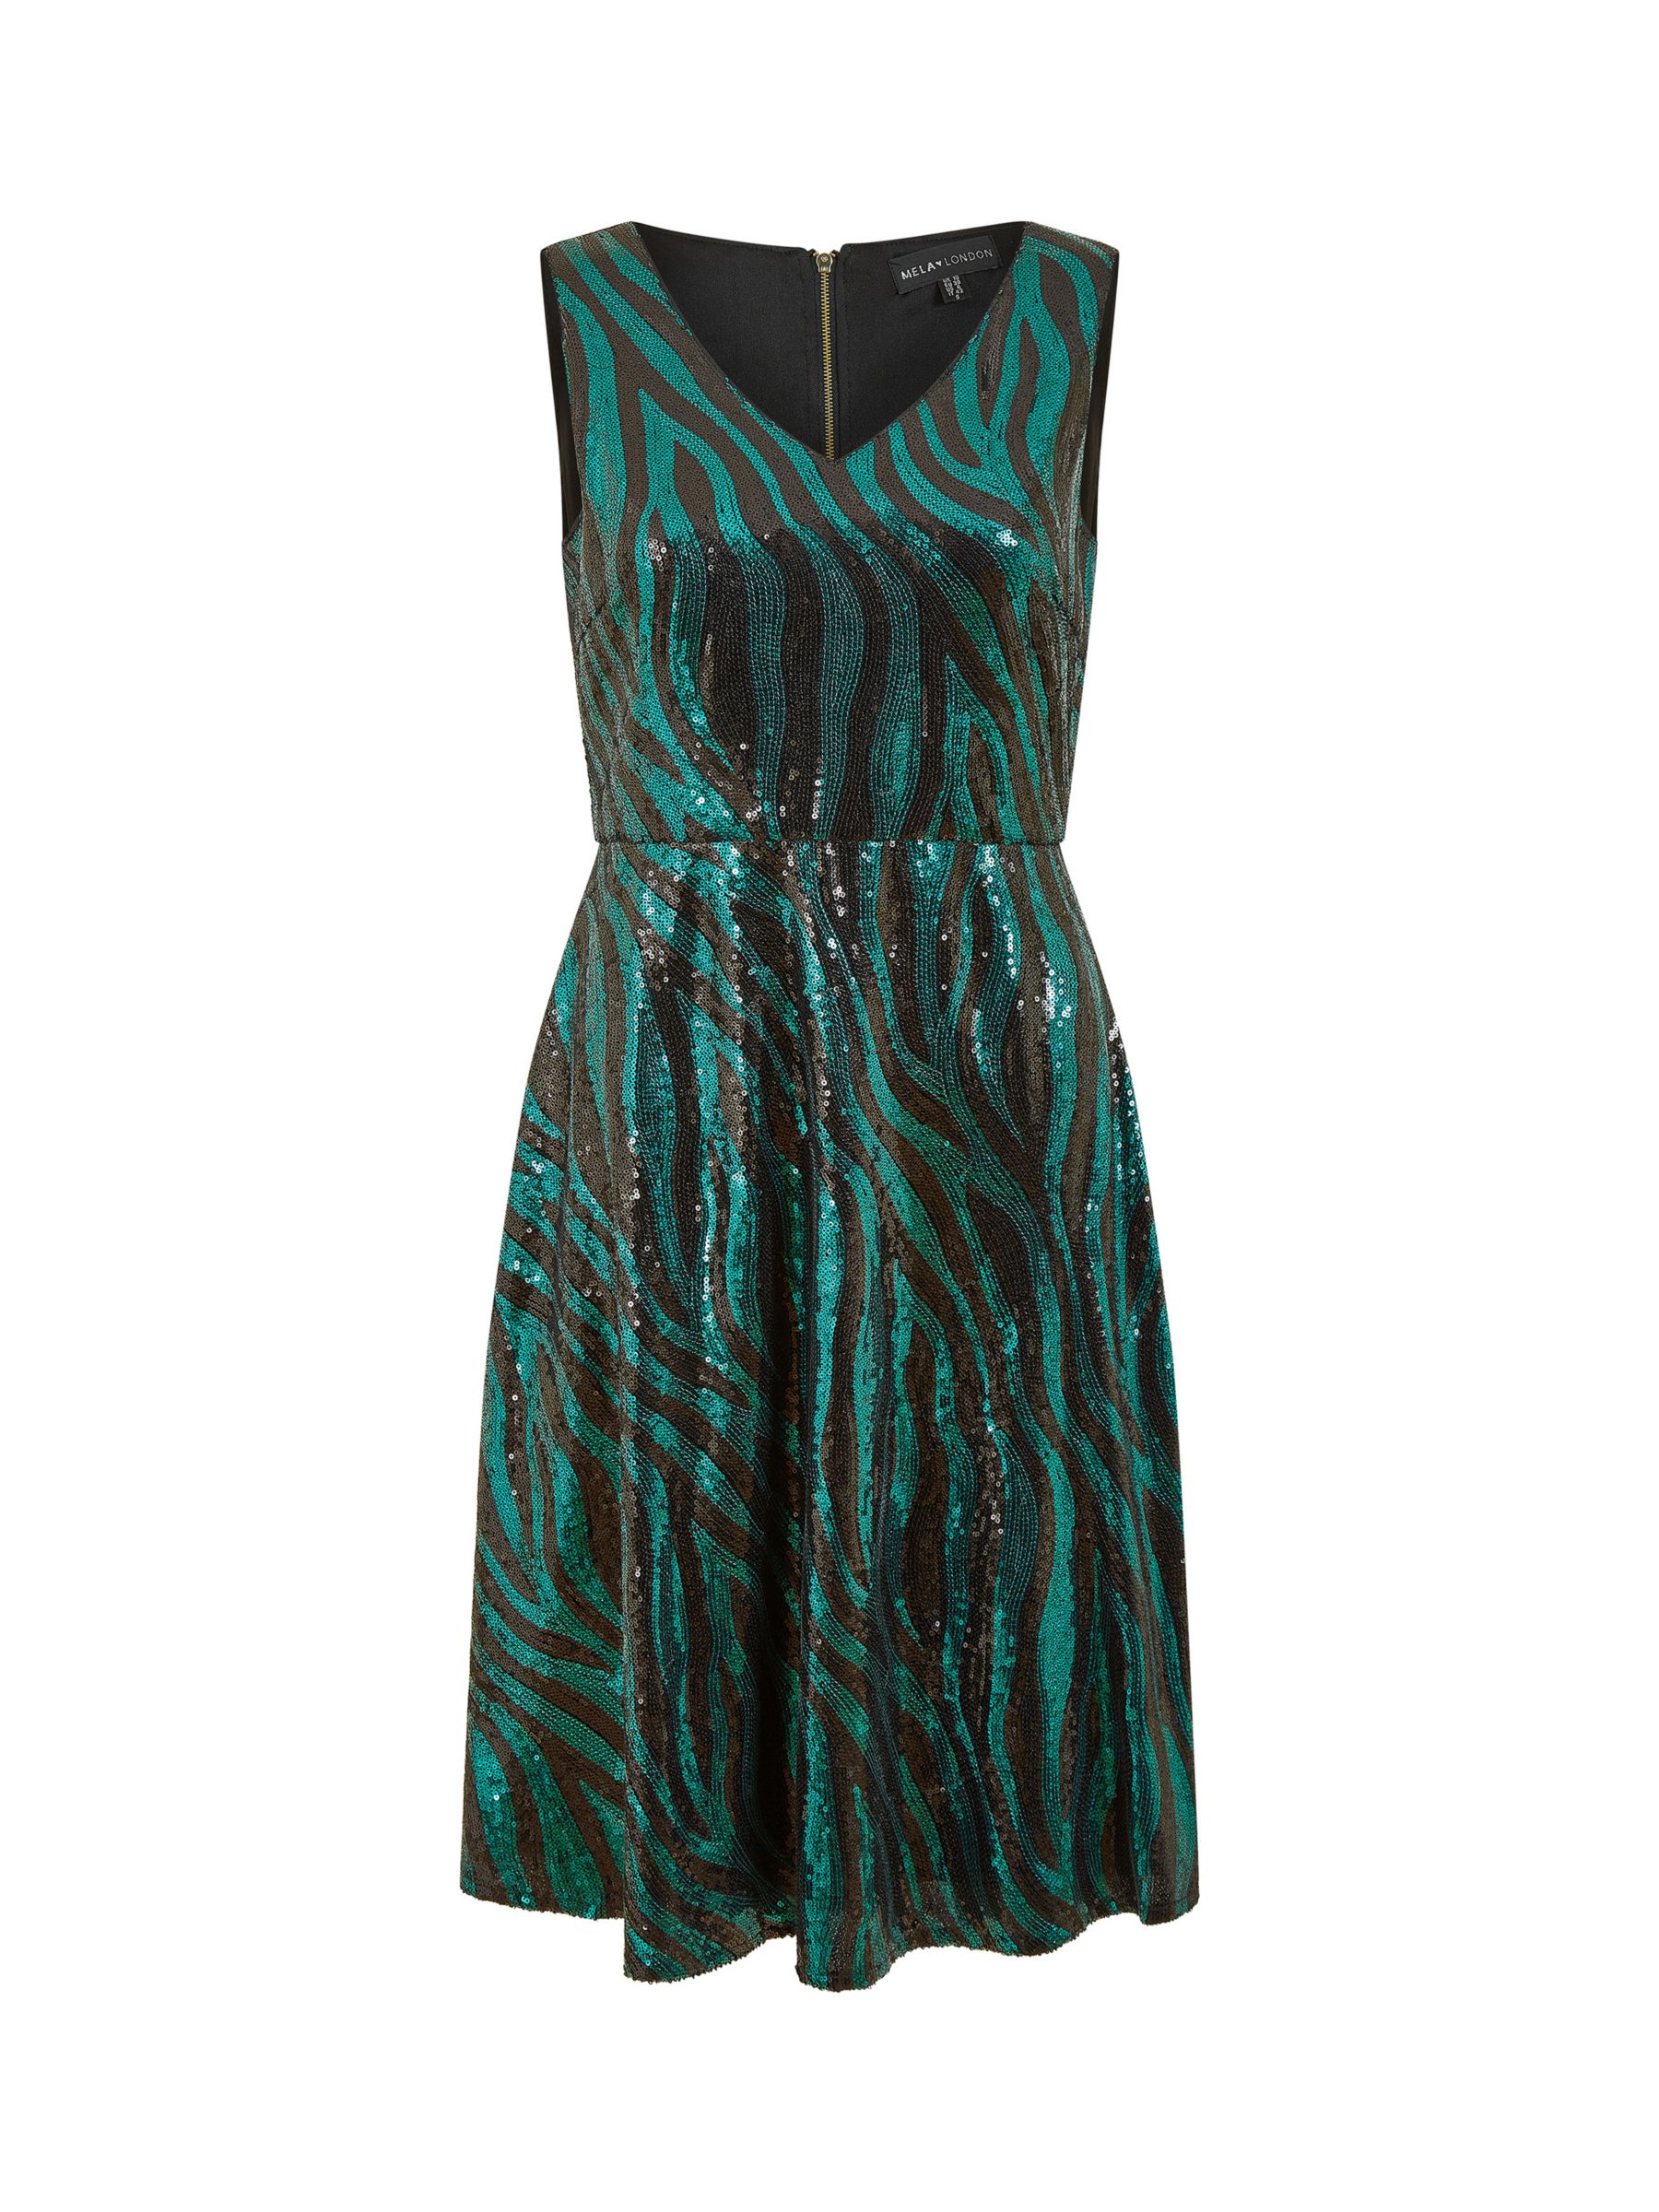 Buy Mela London Zebra Print Sequin Skater Dress, Green Online at johnlewis.com